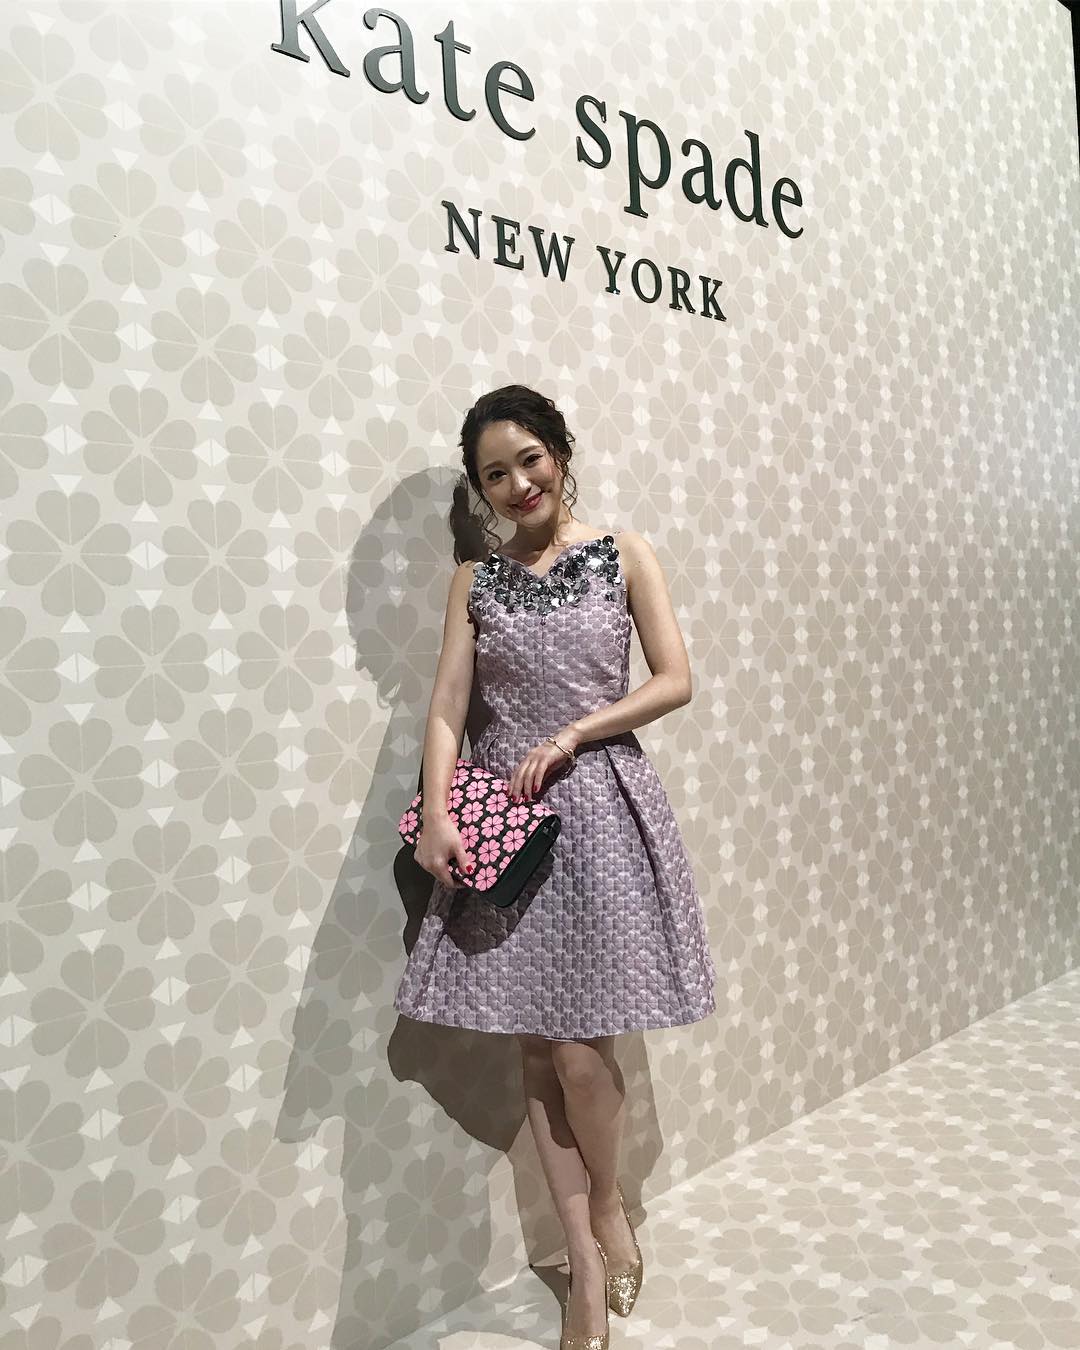 Cancam Kate Spade New Yorkのパーティーでまいまいをキャッチ 淡いピンクのワンピースもバッグも似合ってますまいまい かわいい まいまい Chay Wacoca